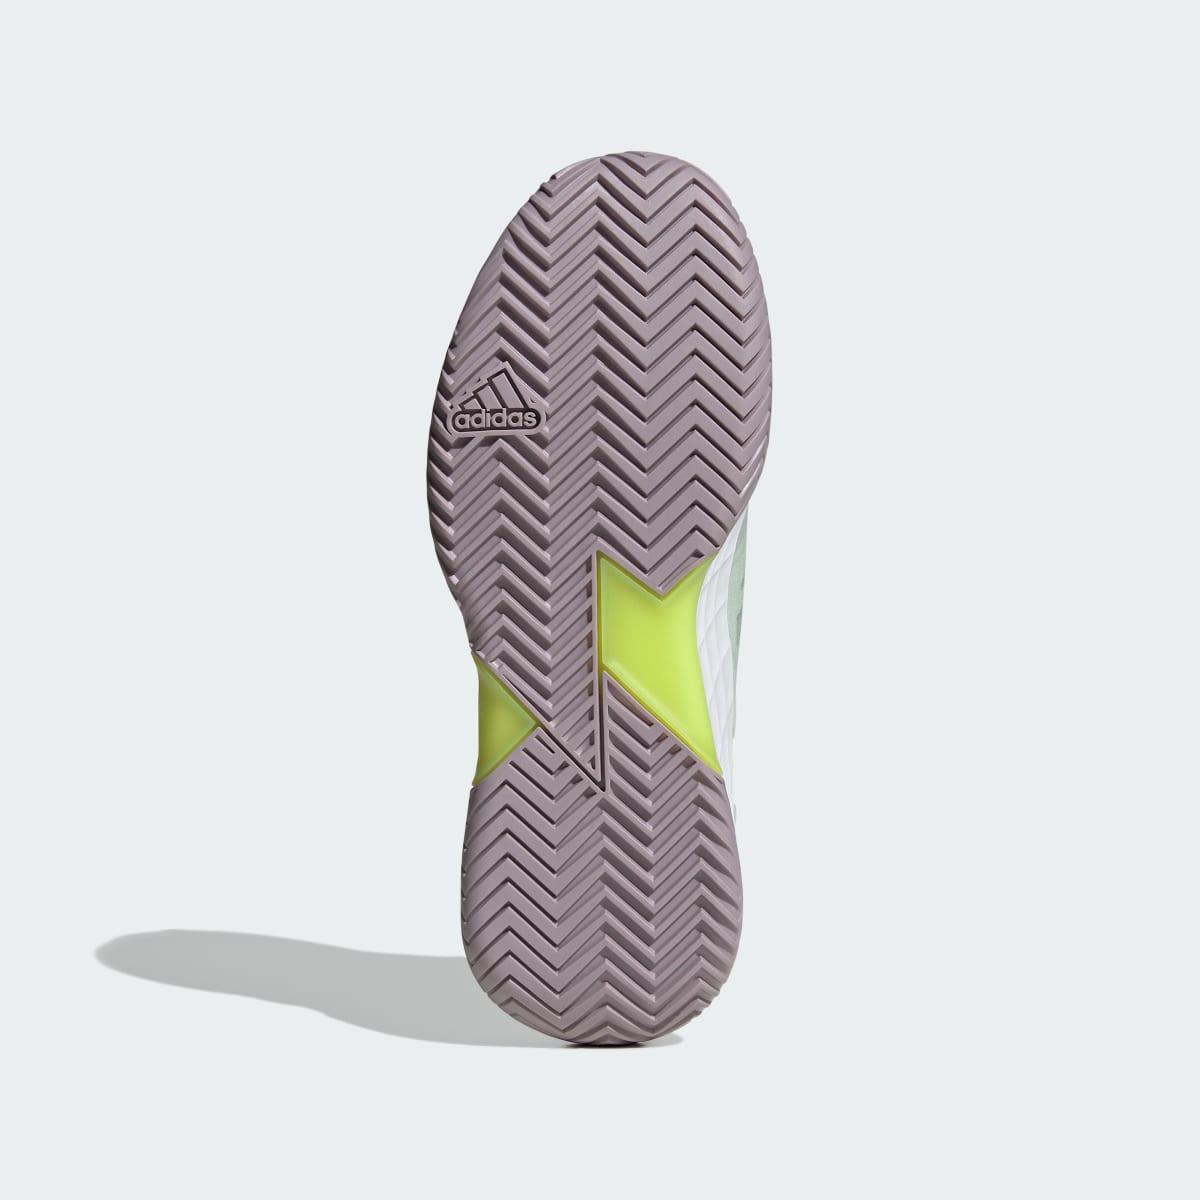 Adidas Adizero Ubersonic 4.1 Tennis Shoes. 7